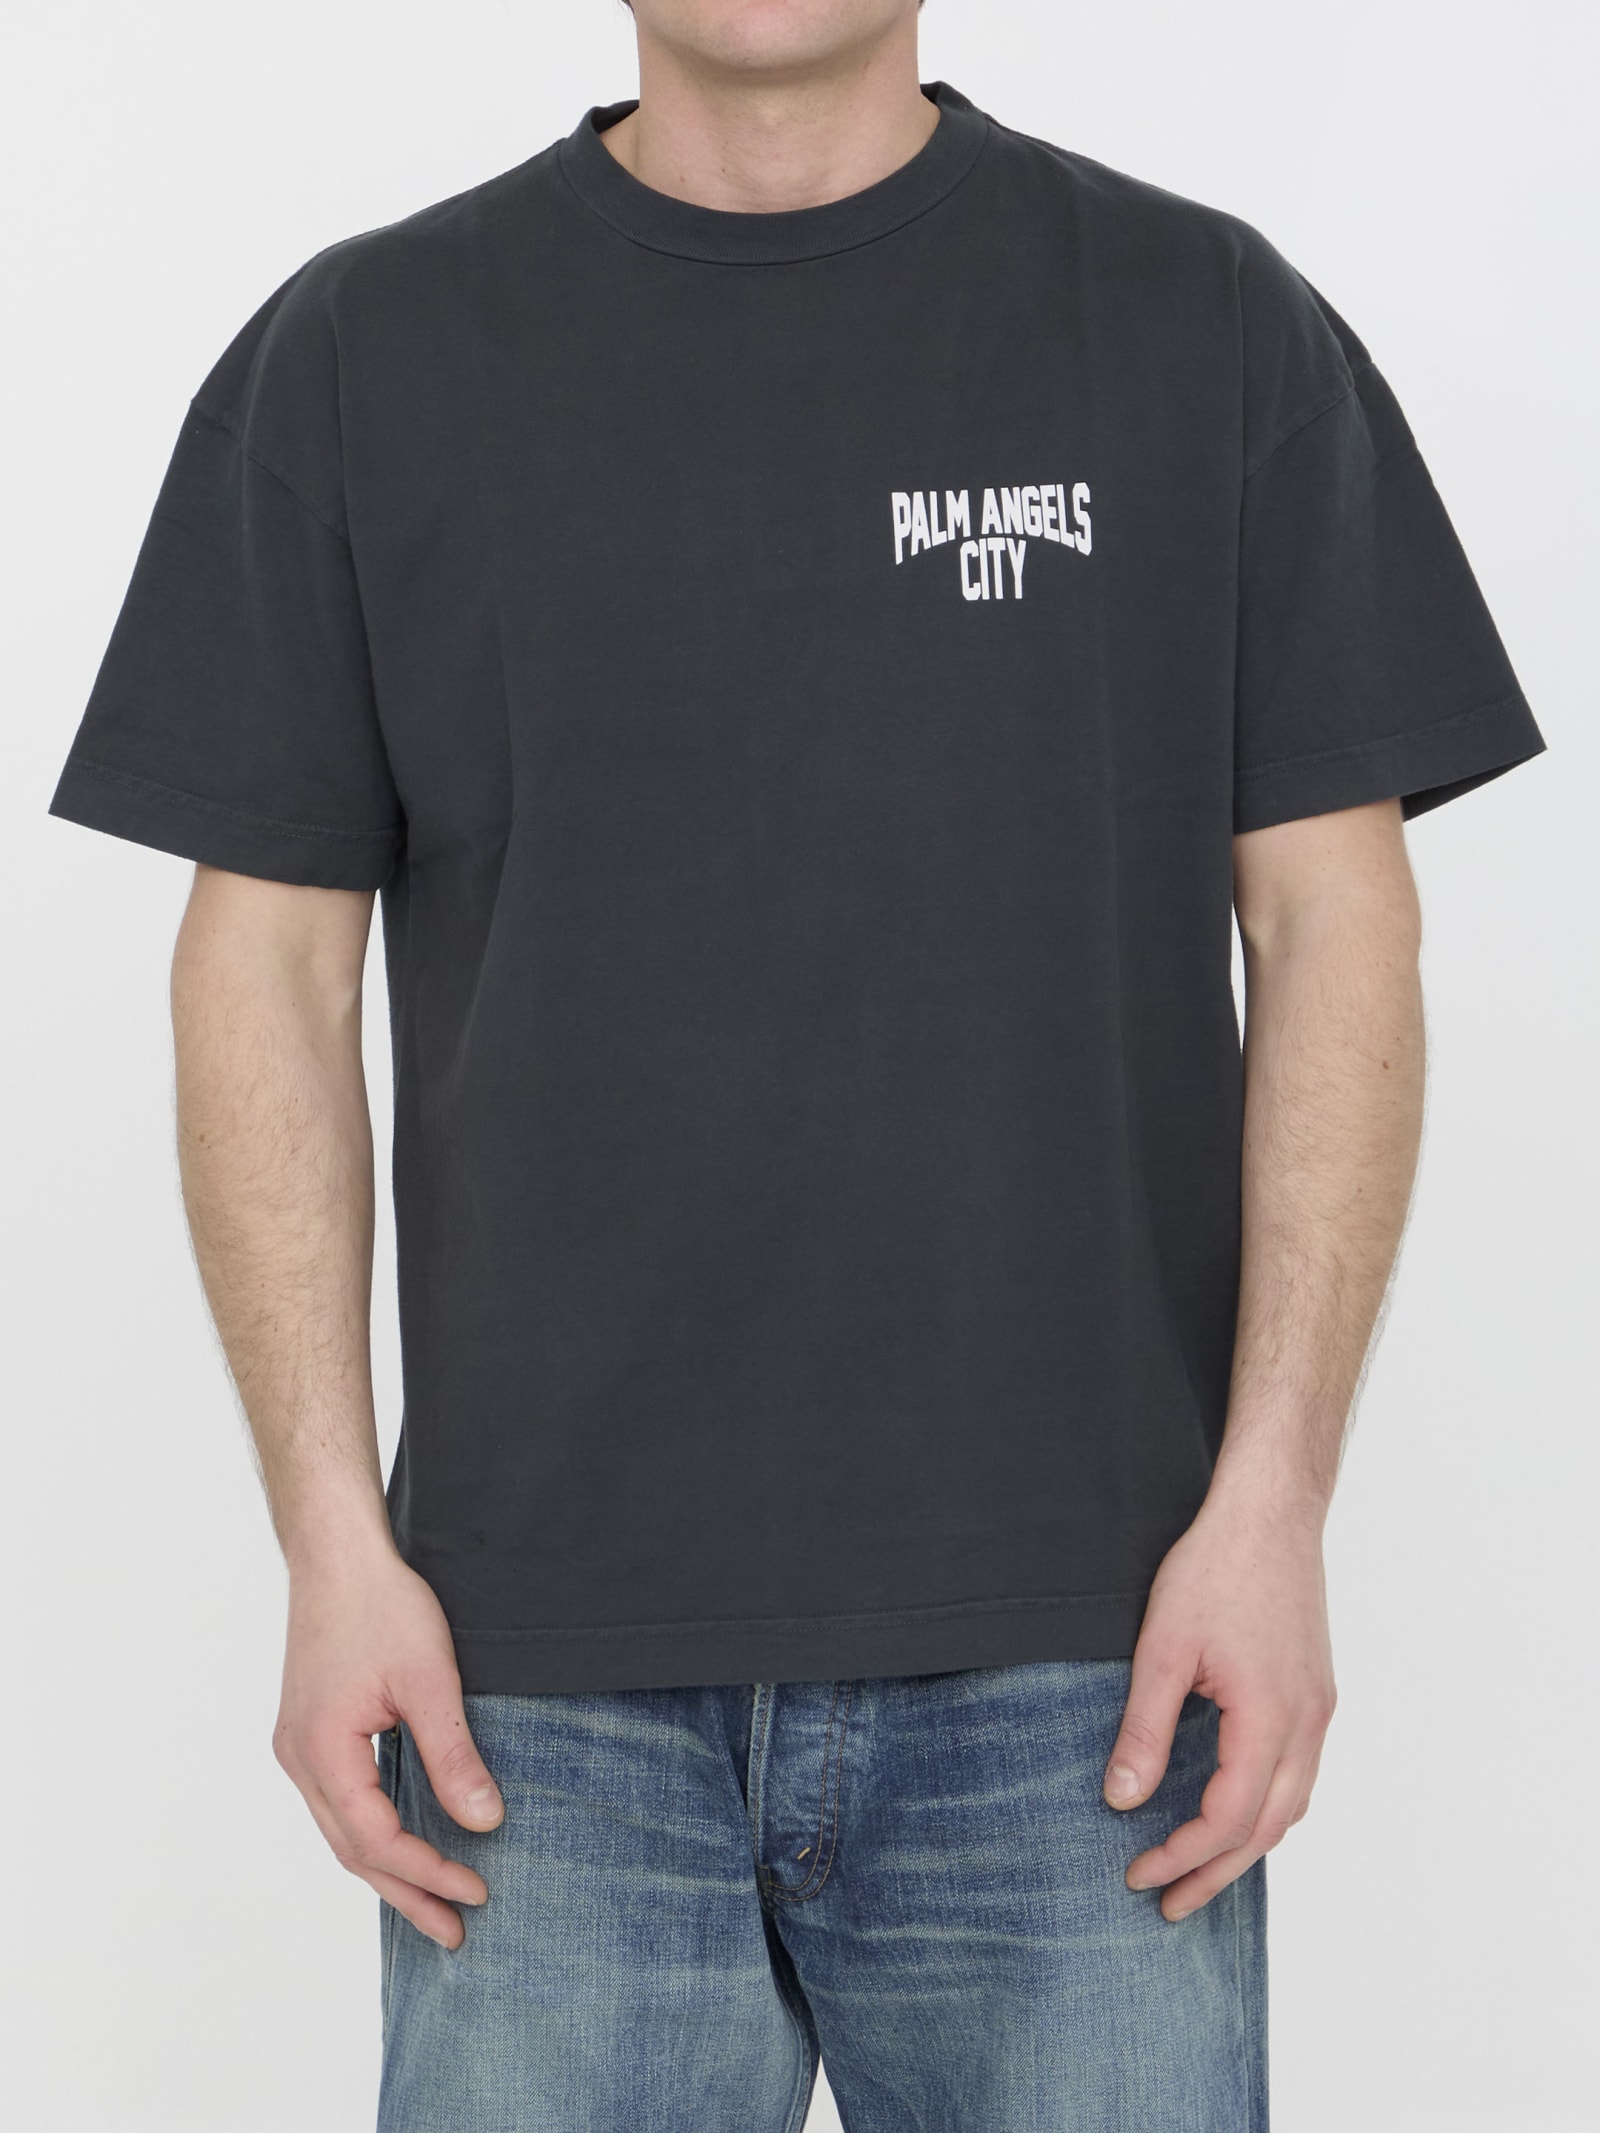 Pa City T-shirt